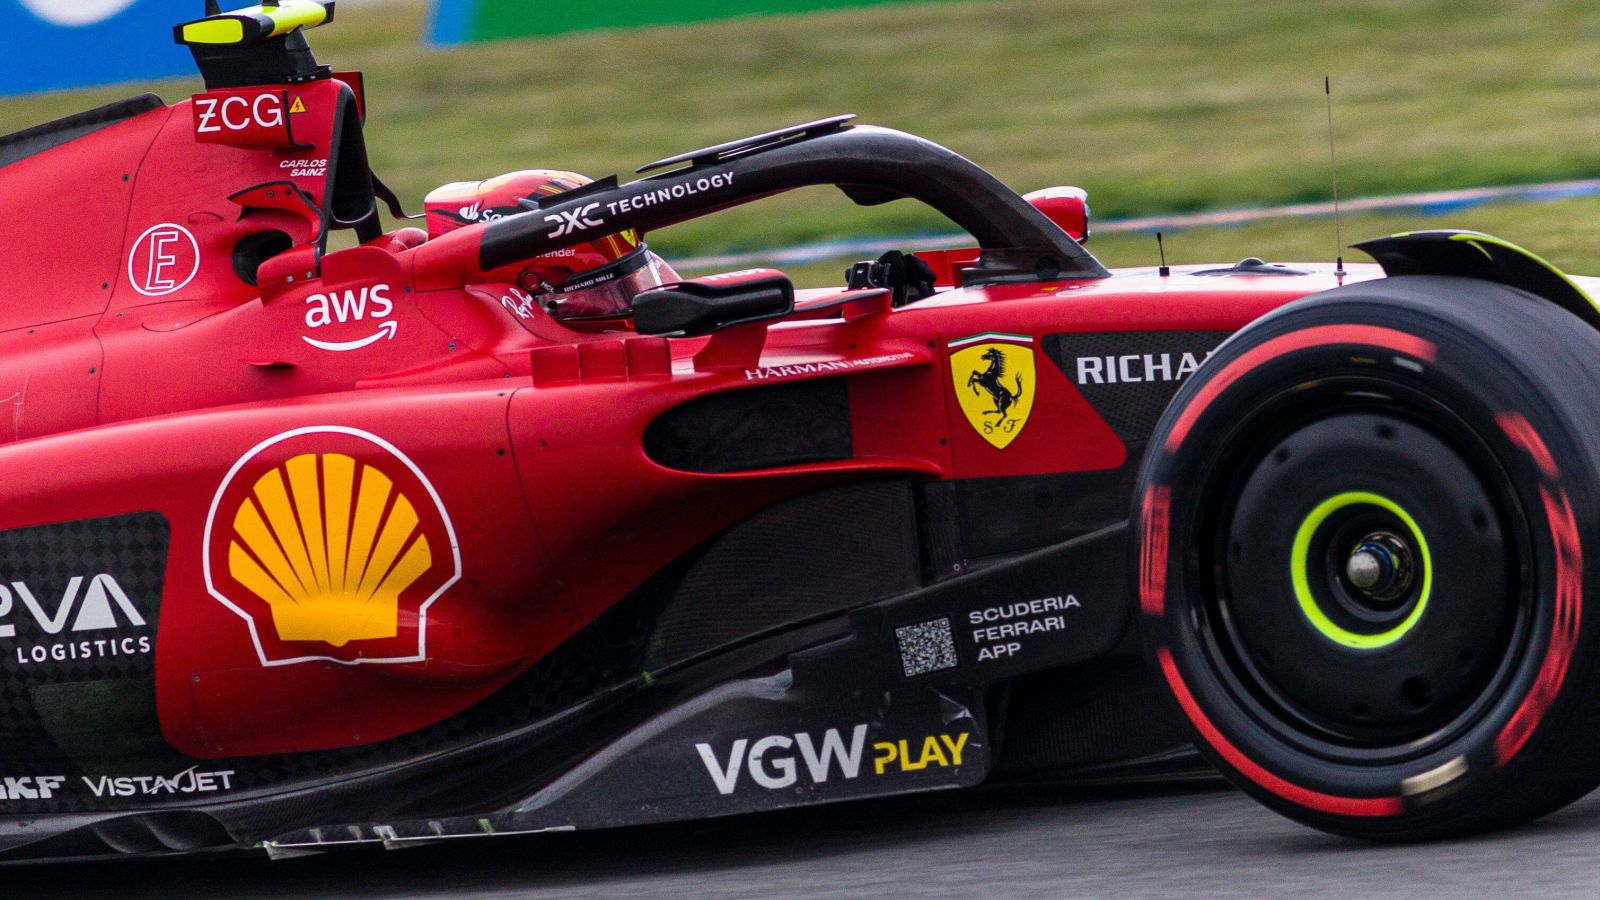 Glaring weakness identified in Ferrari’s F1 team by former employee